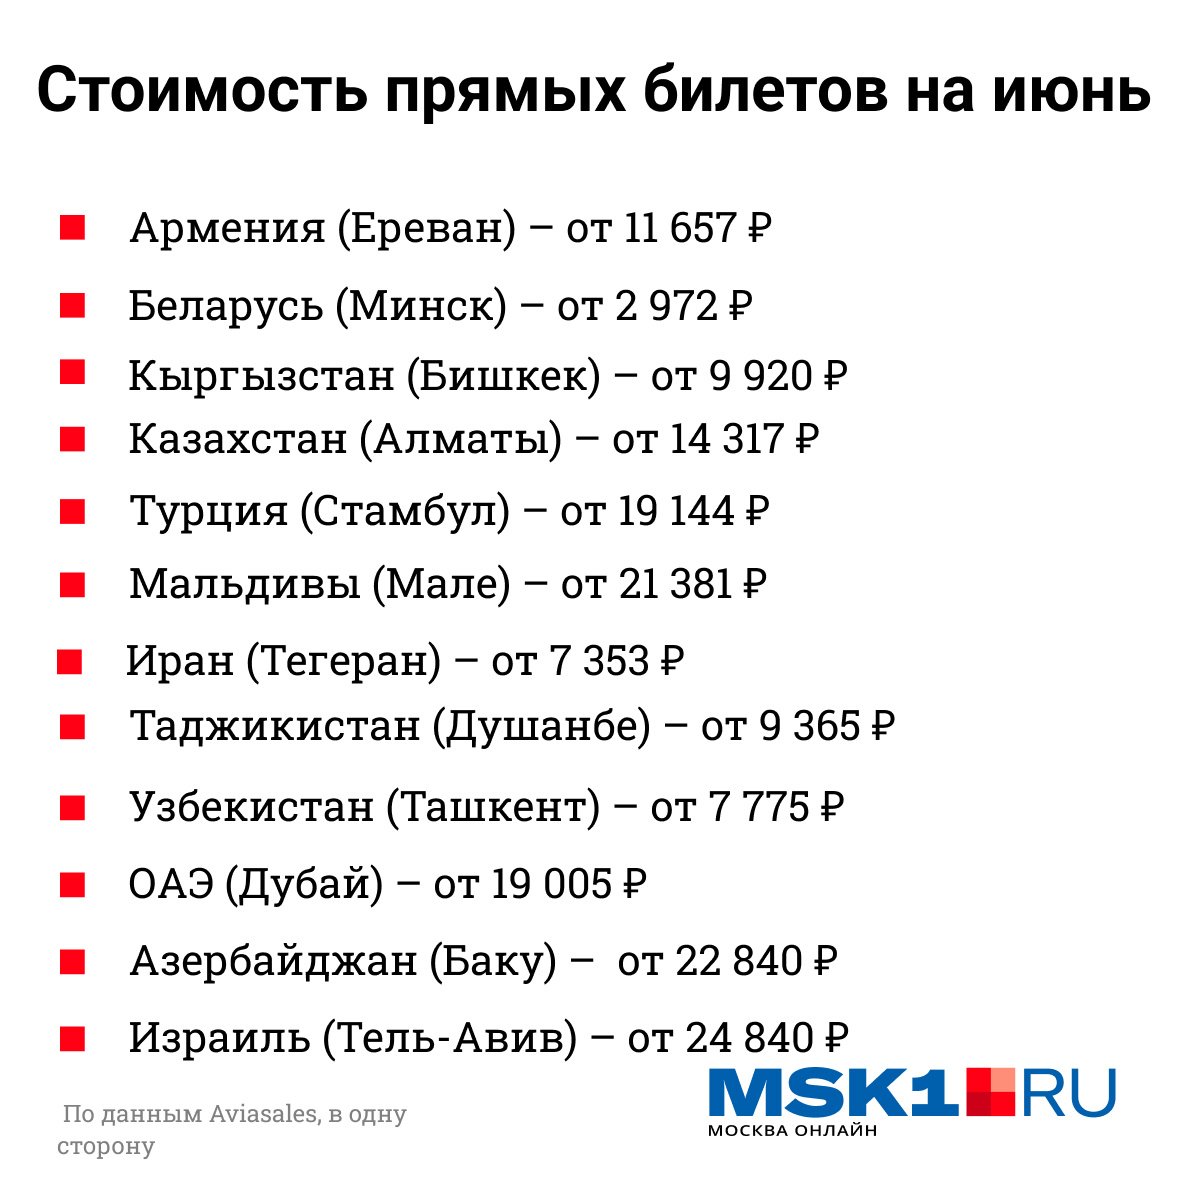 Минимальная стоимость билетов из Москвы в июне